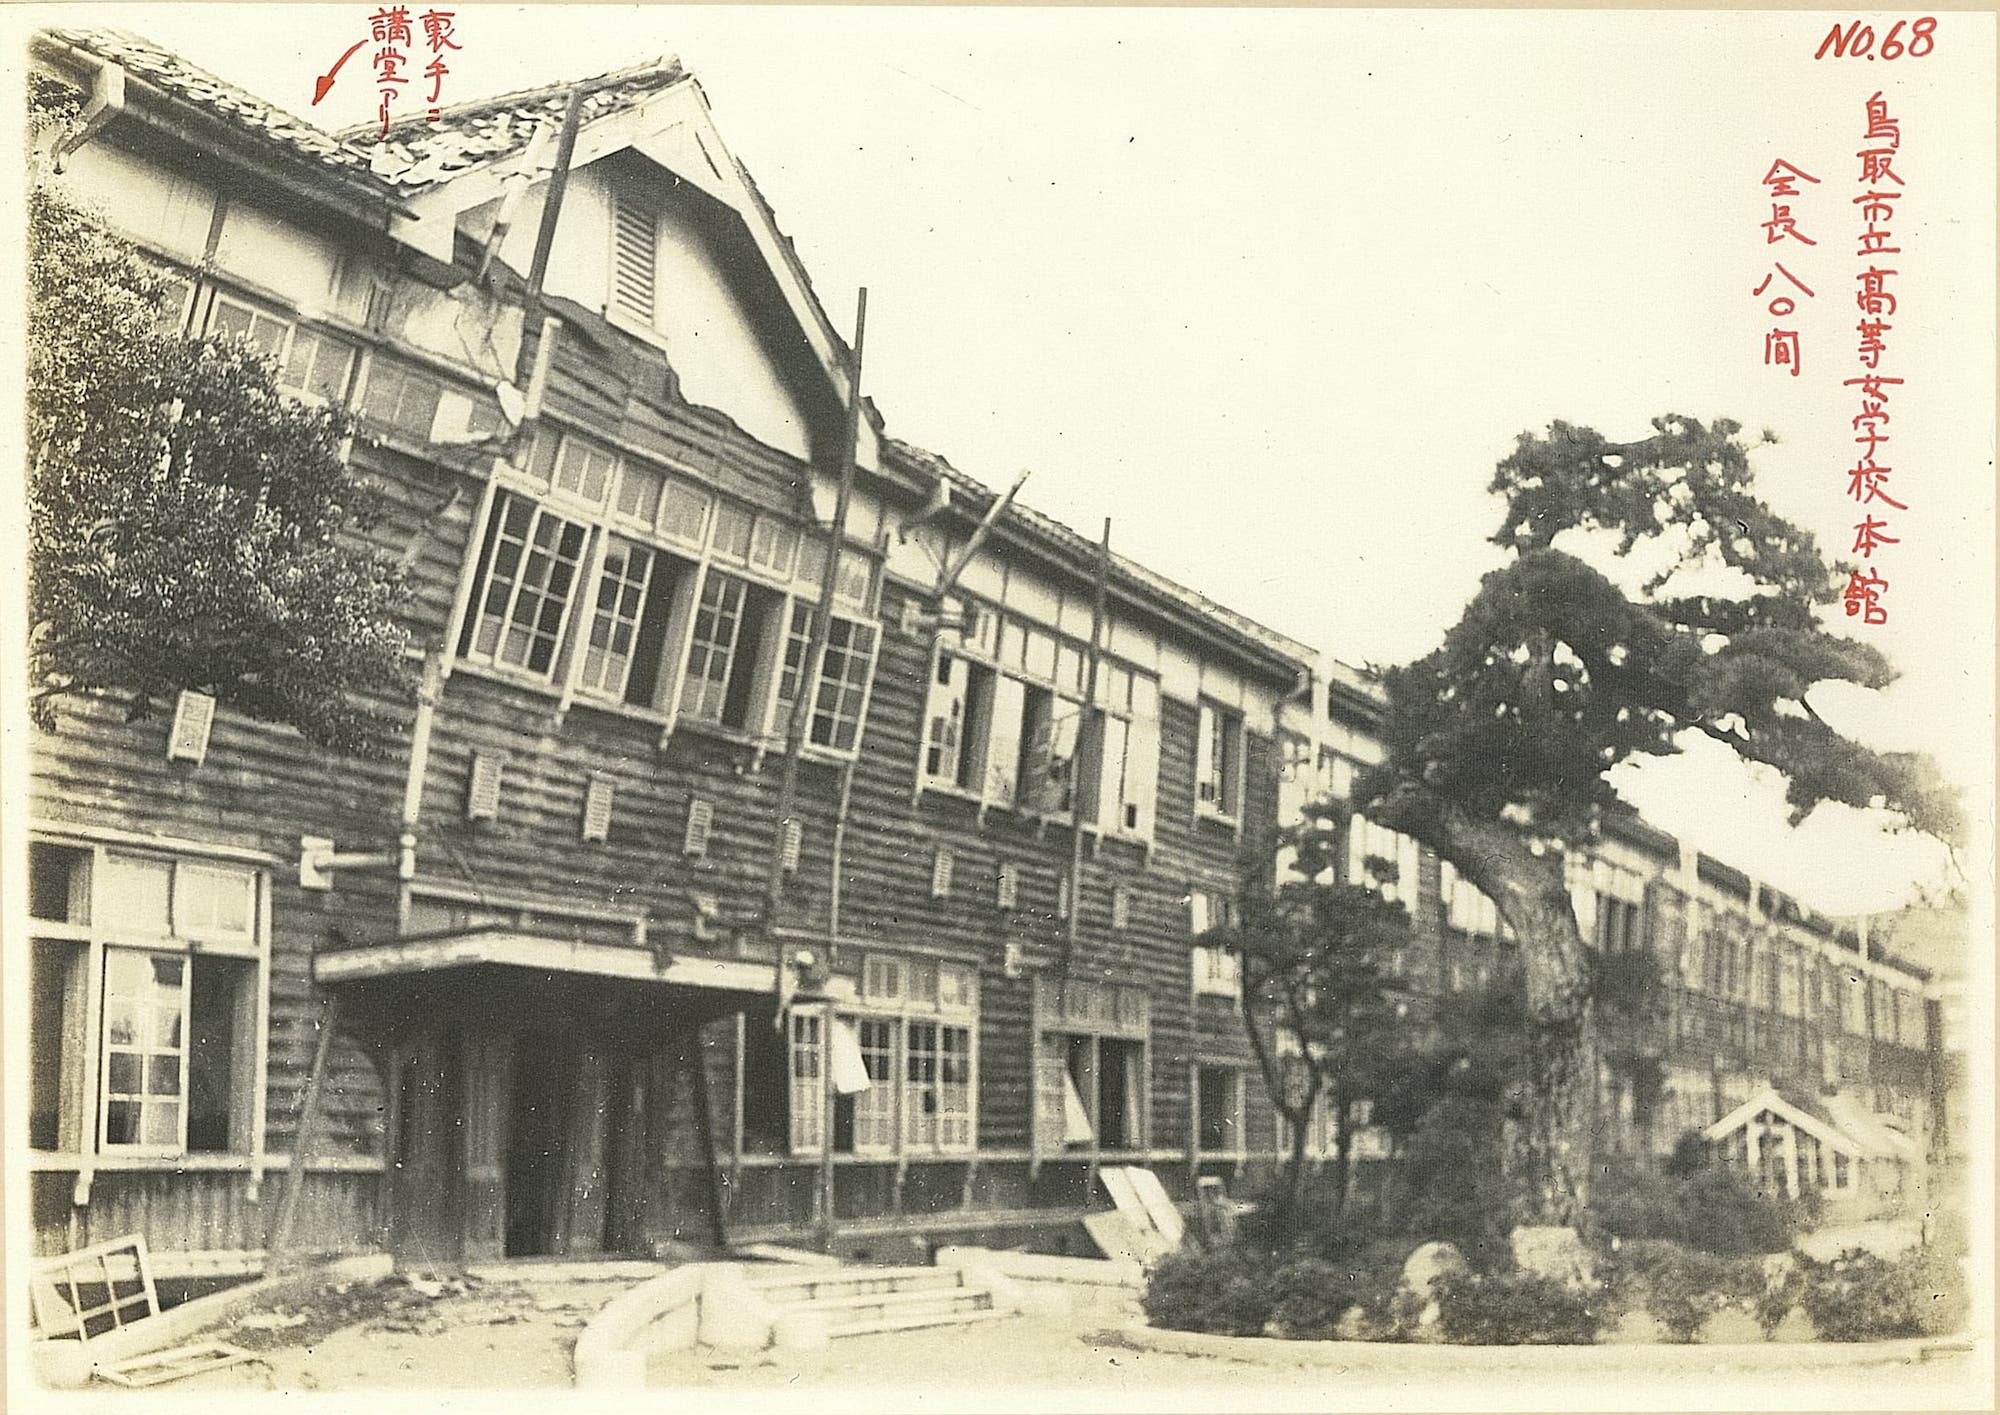 鳥取市立高等女学校本館's image 1